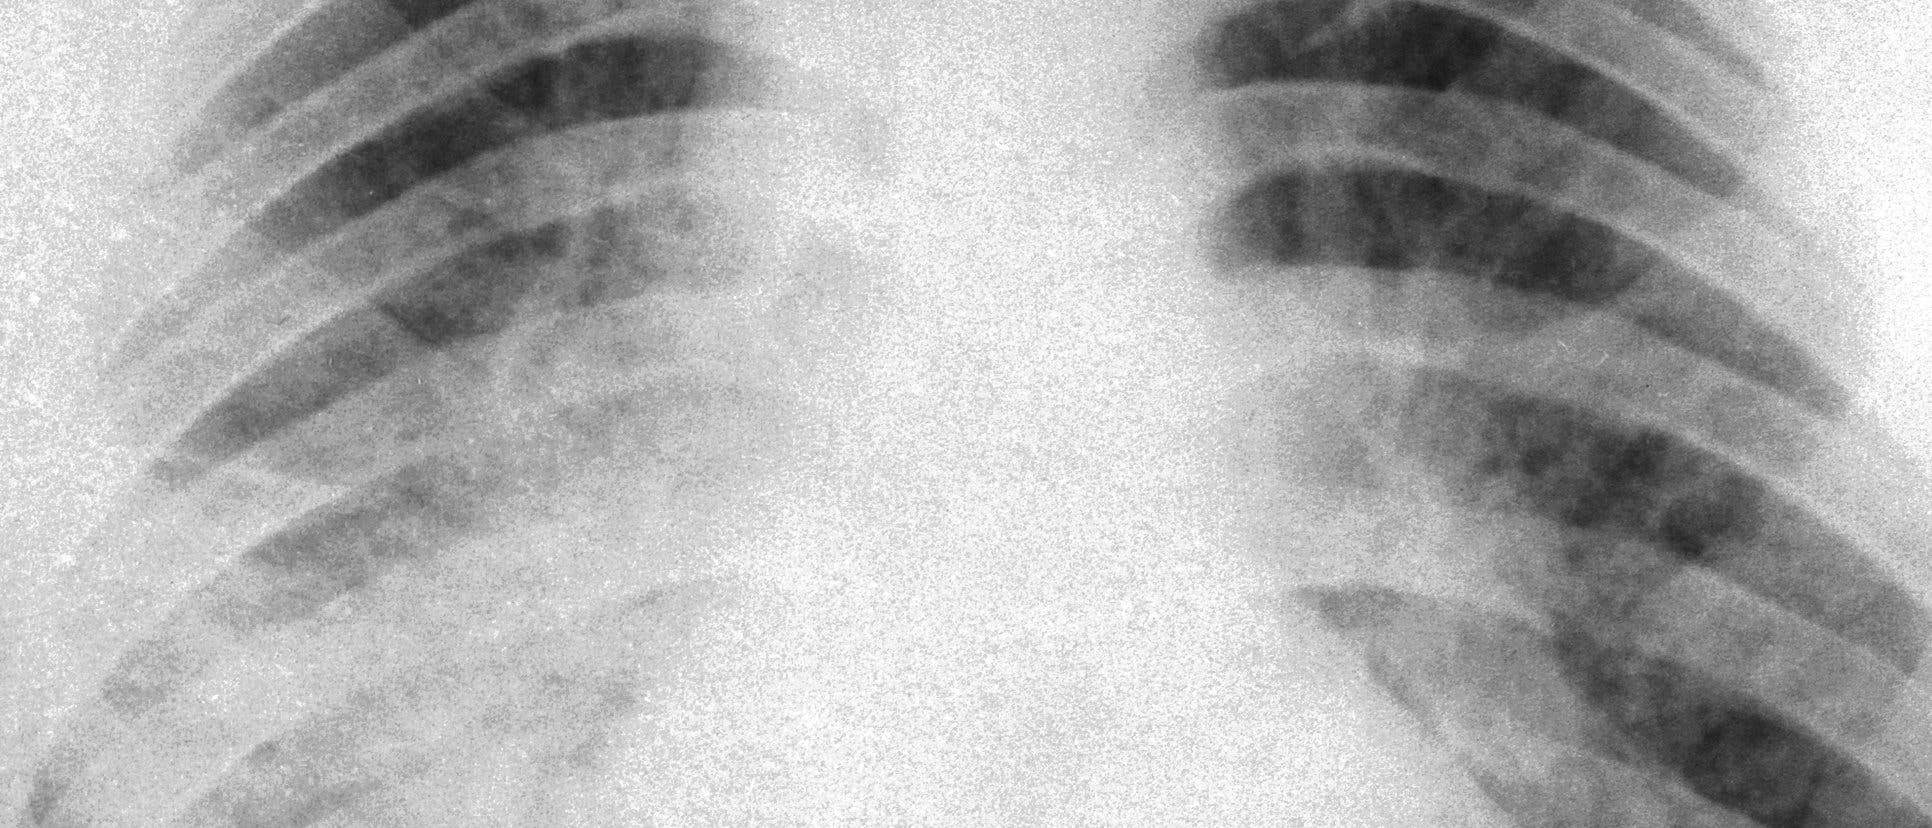 Röntgenbild von 1961